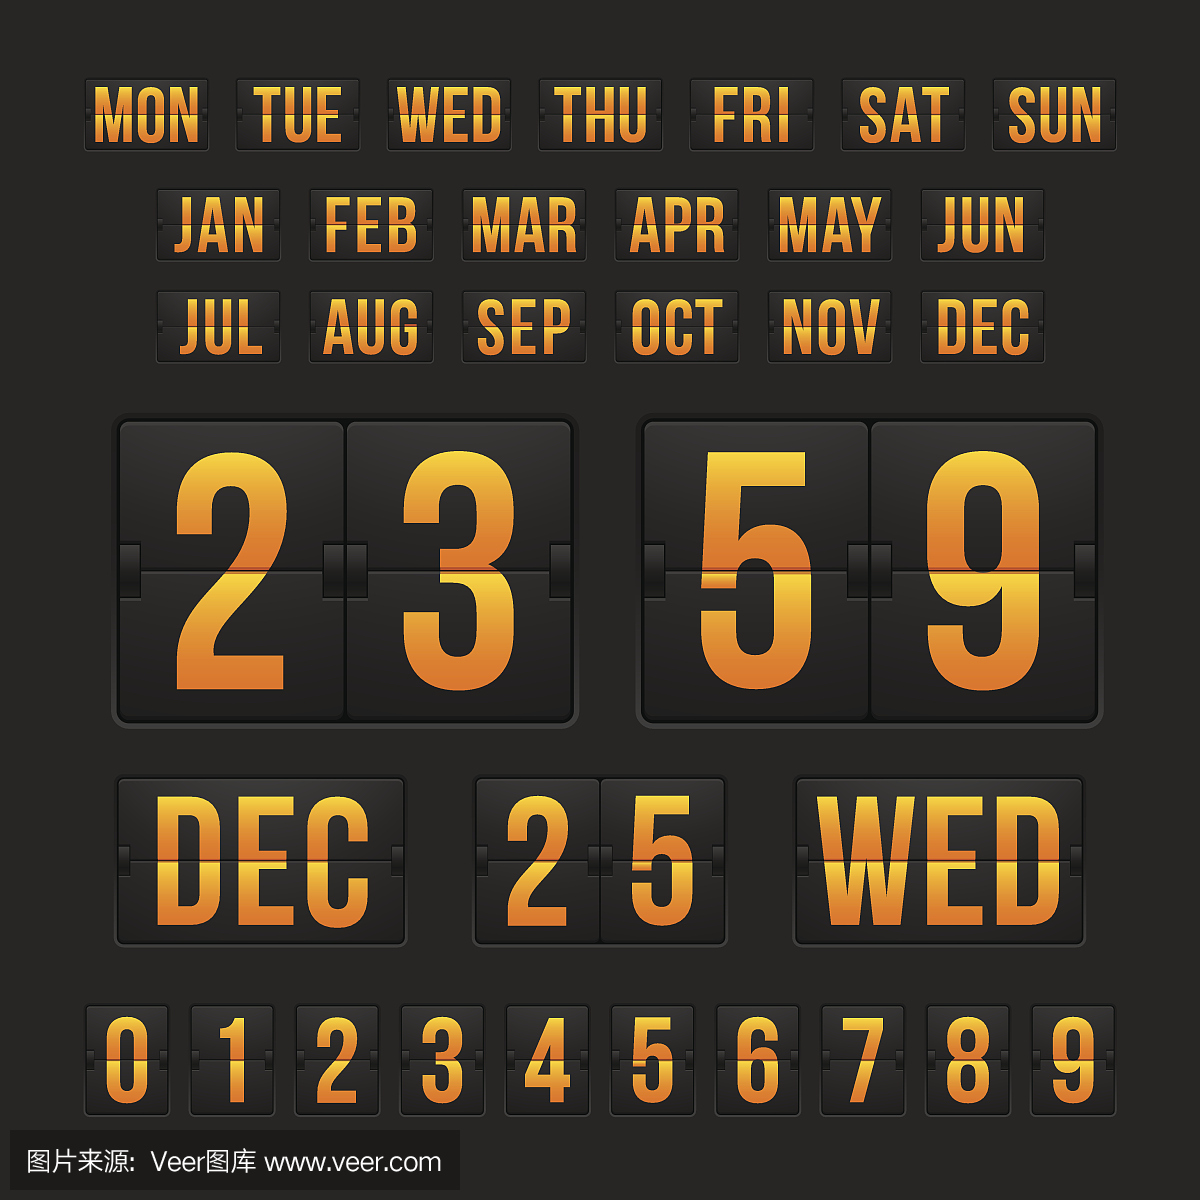 倒数计时器和日期,日历记分牌